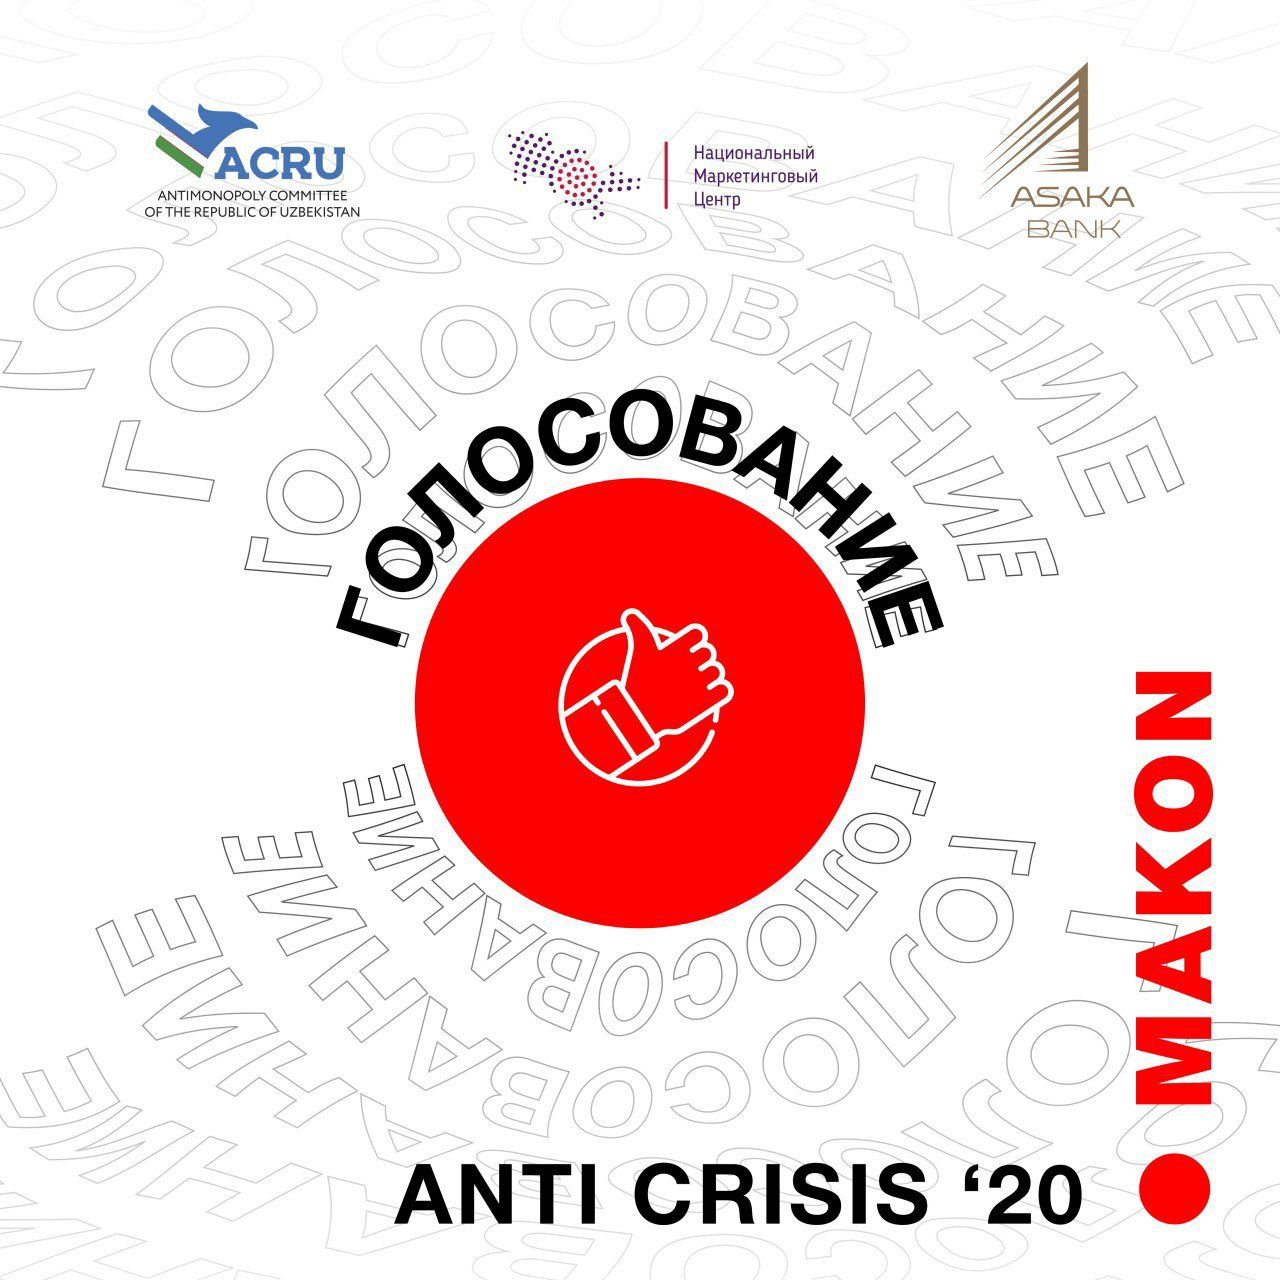 Банк «Асака» активно поддерживает марафон Makon Anti Crisis 2020 